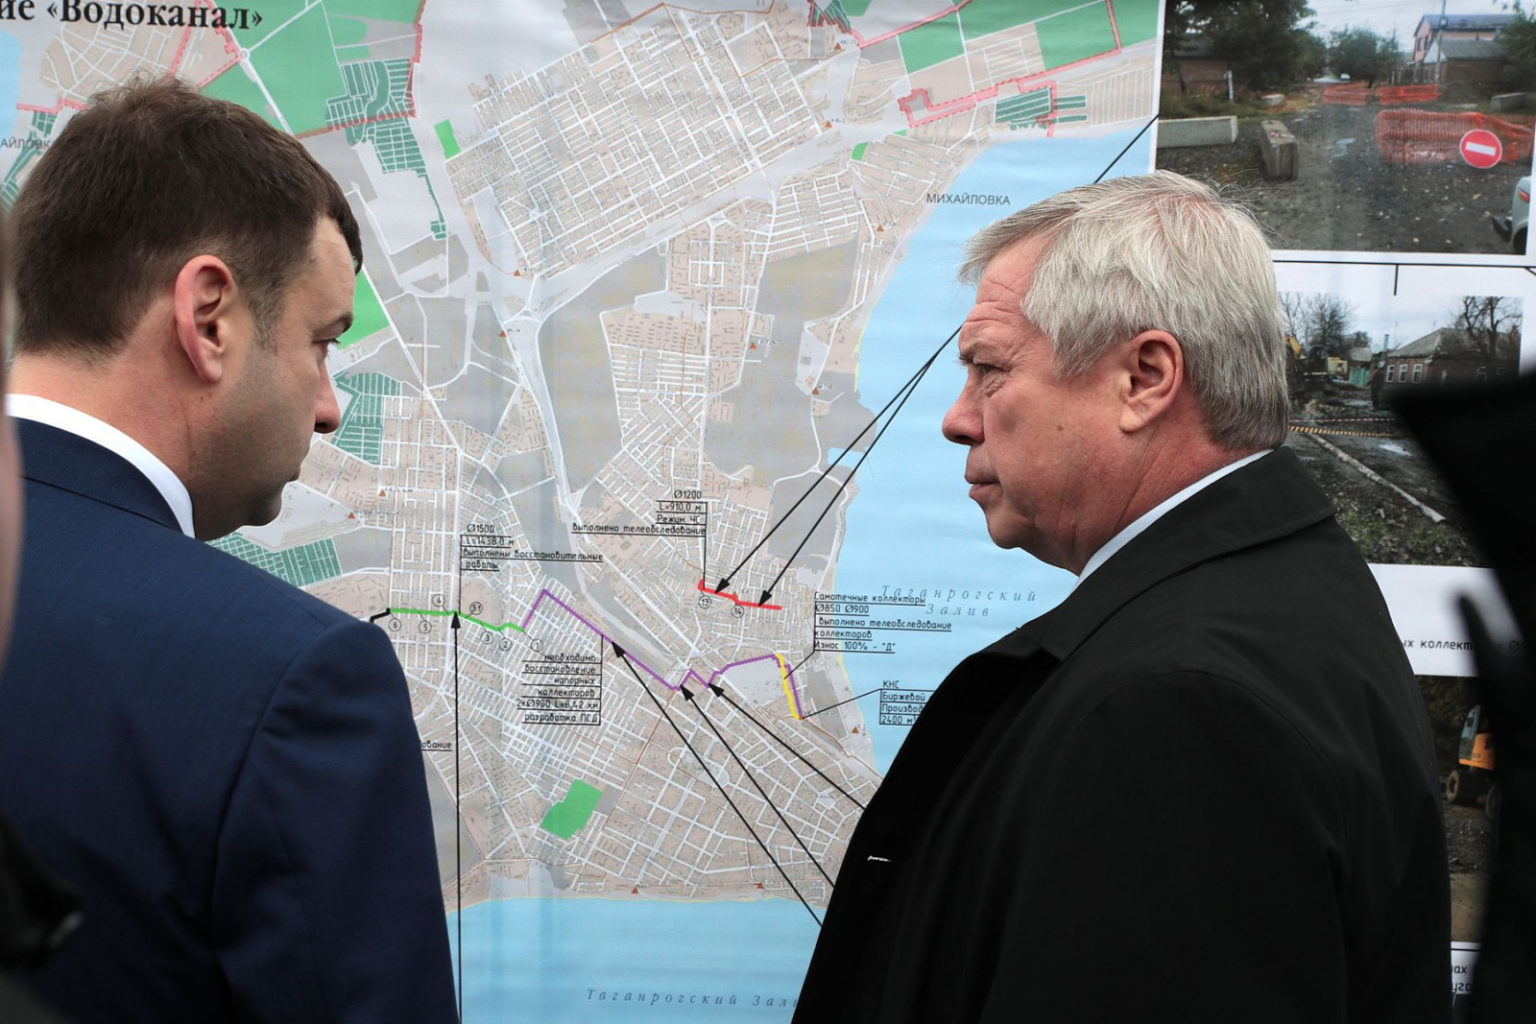 Для обеспечения водоснабжения и водоотведения в Таганроге власти выделили 152 млн рублей